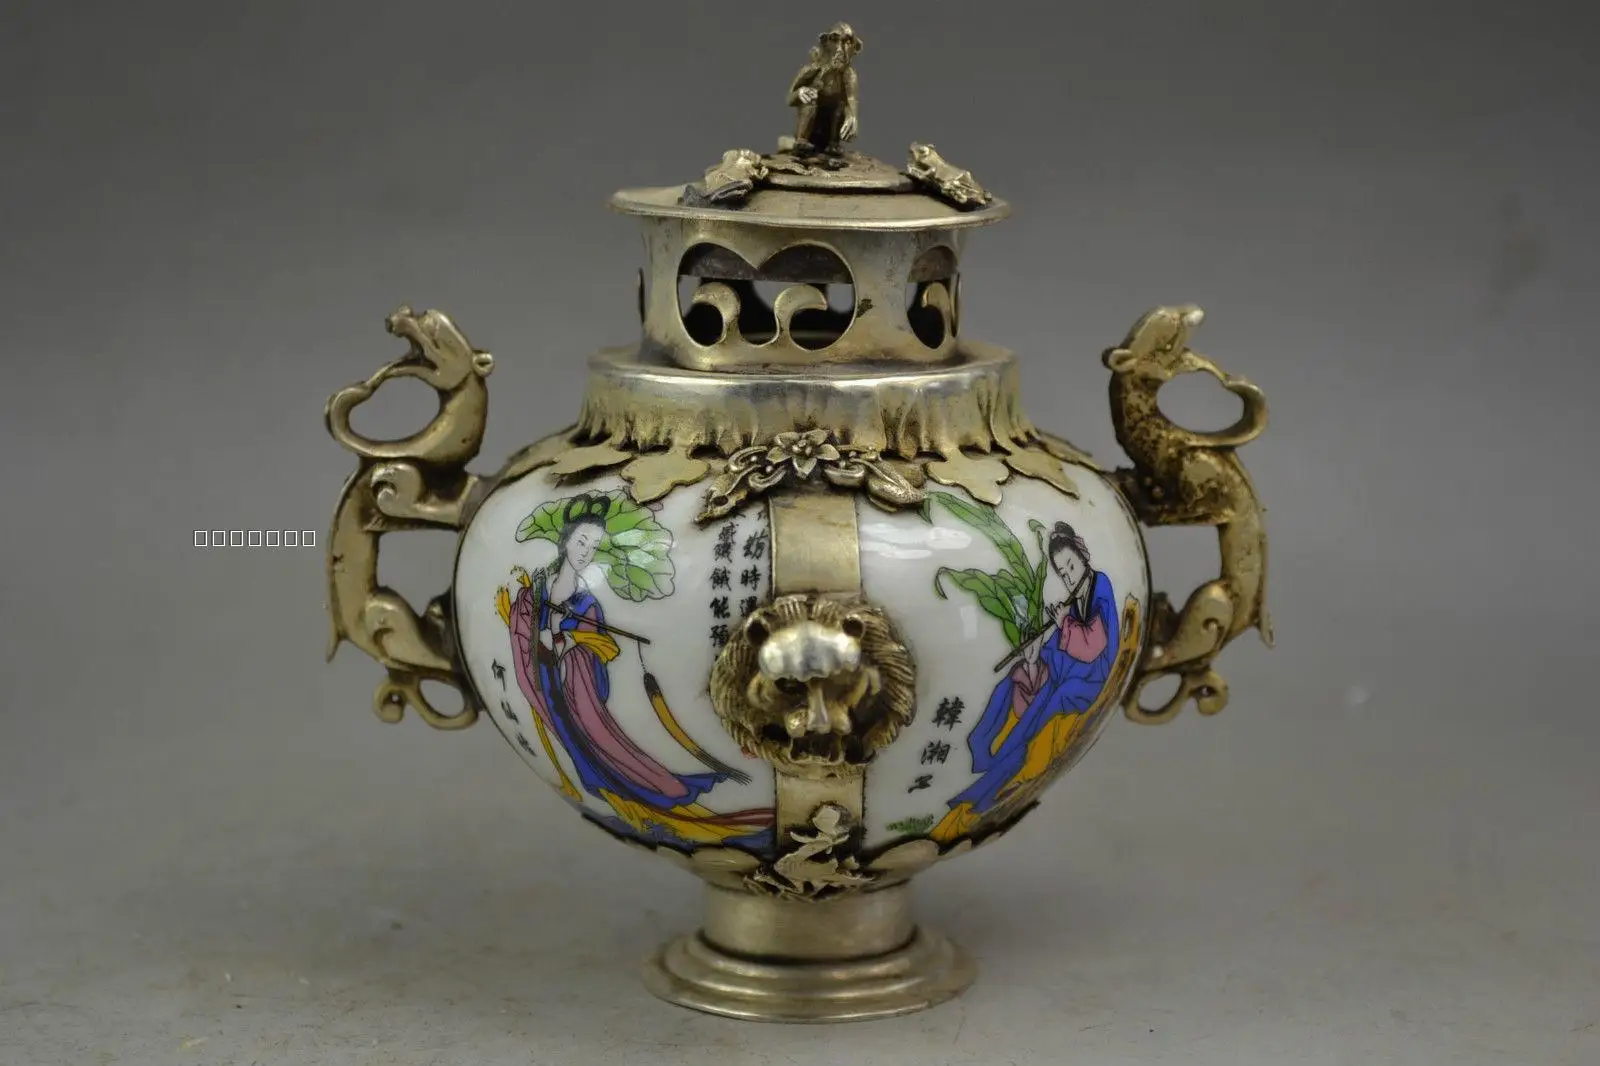 

Antique Tibetan Silver Ceramic Porcelain Incense Burner Home Decorative Crafts Decoration Gifts